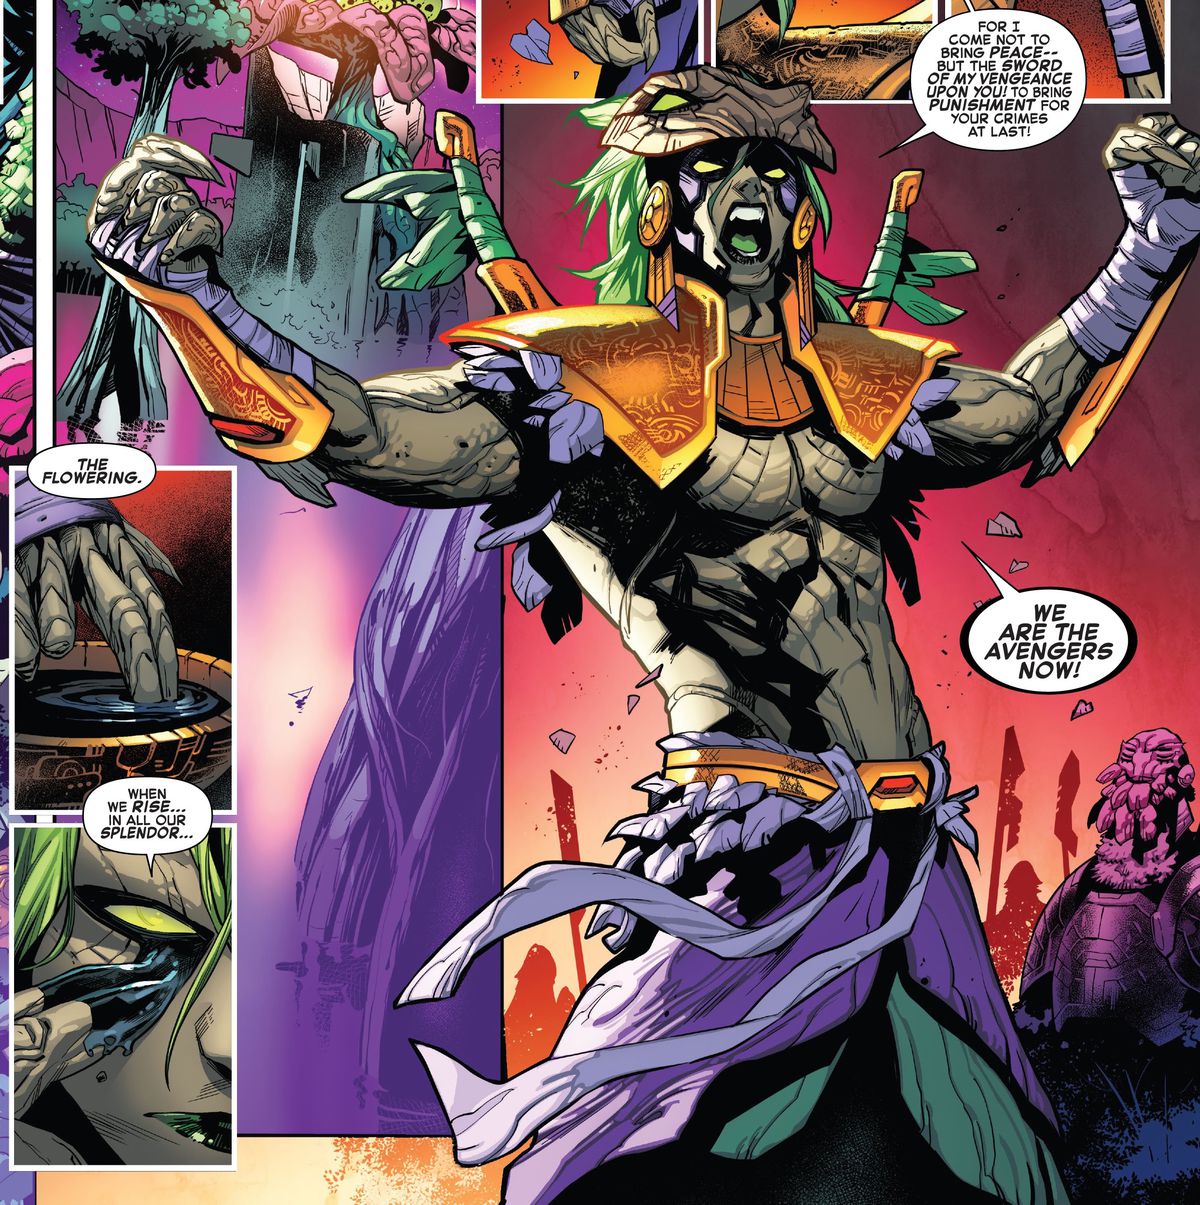 Sequoia dichiara la risoluzione di Cotati di portare la guerra nell'universo in Empyre # 1, Marvel Comics (2020). 